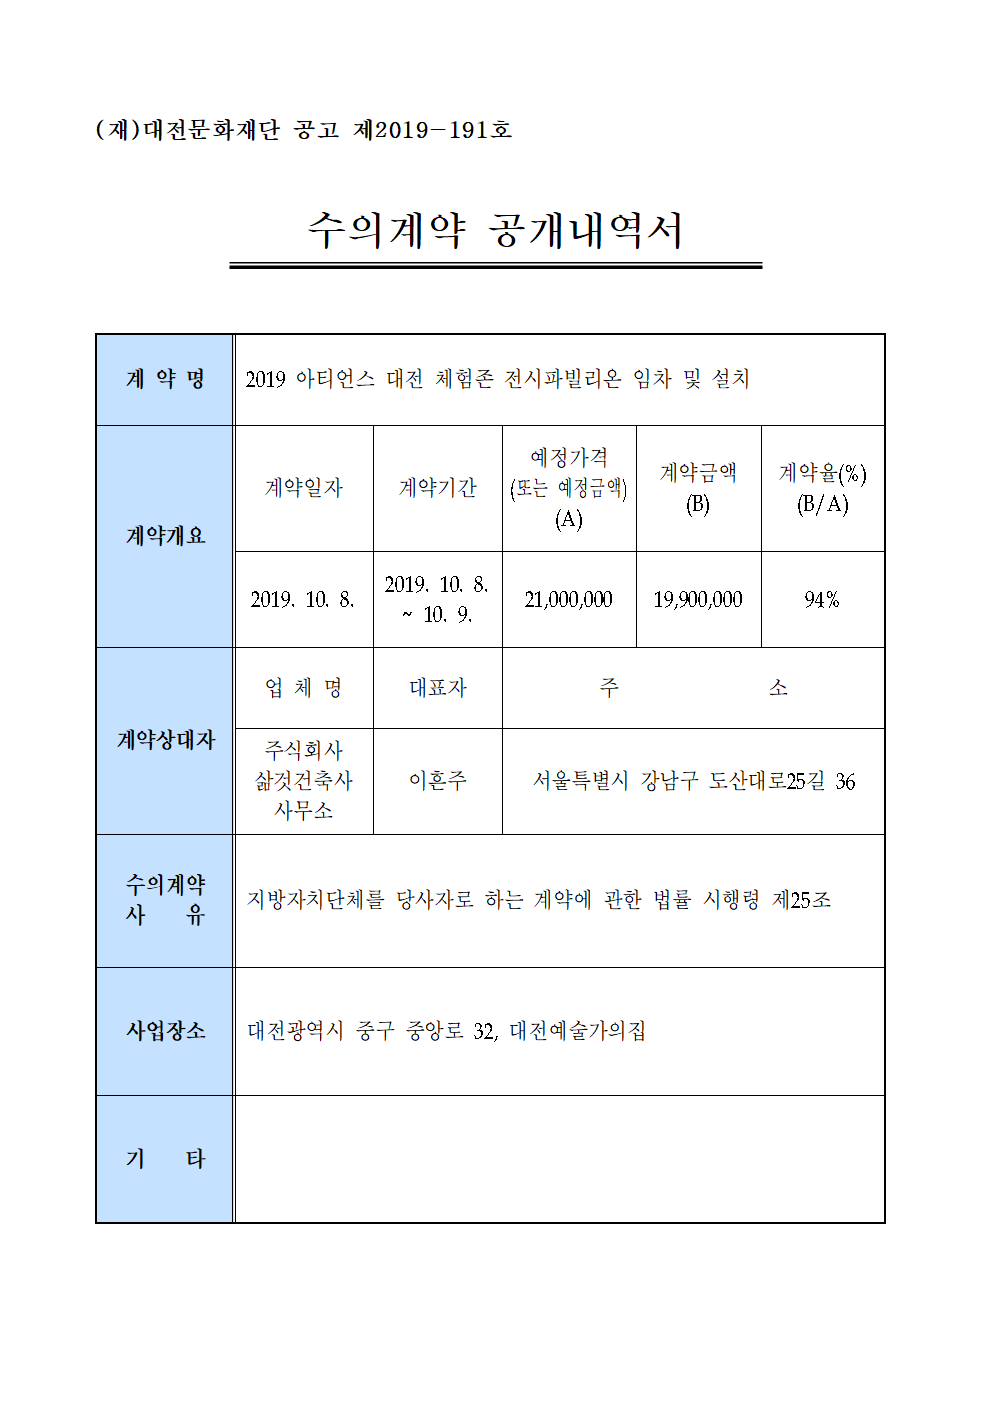 2019 아티언스 대전 체험존 전시파빌리온 임차 및 설치 용역 수의계약 내역 공개